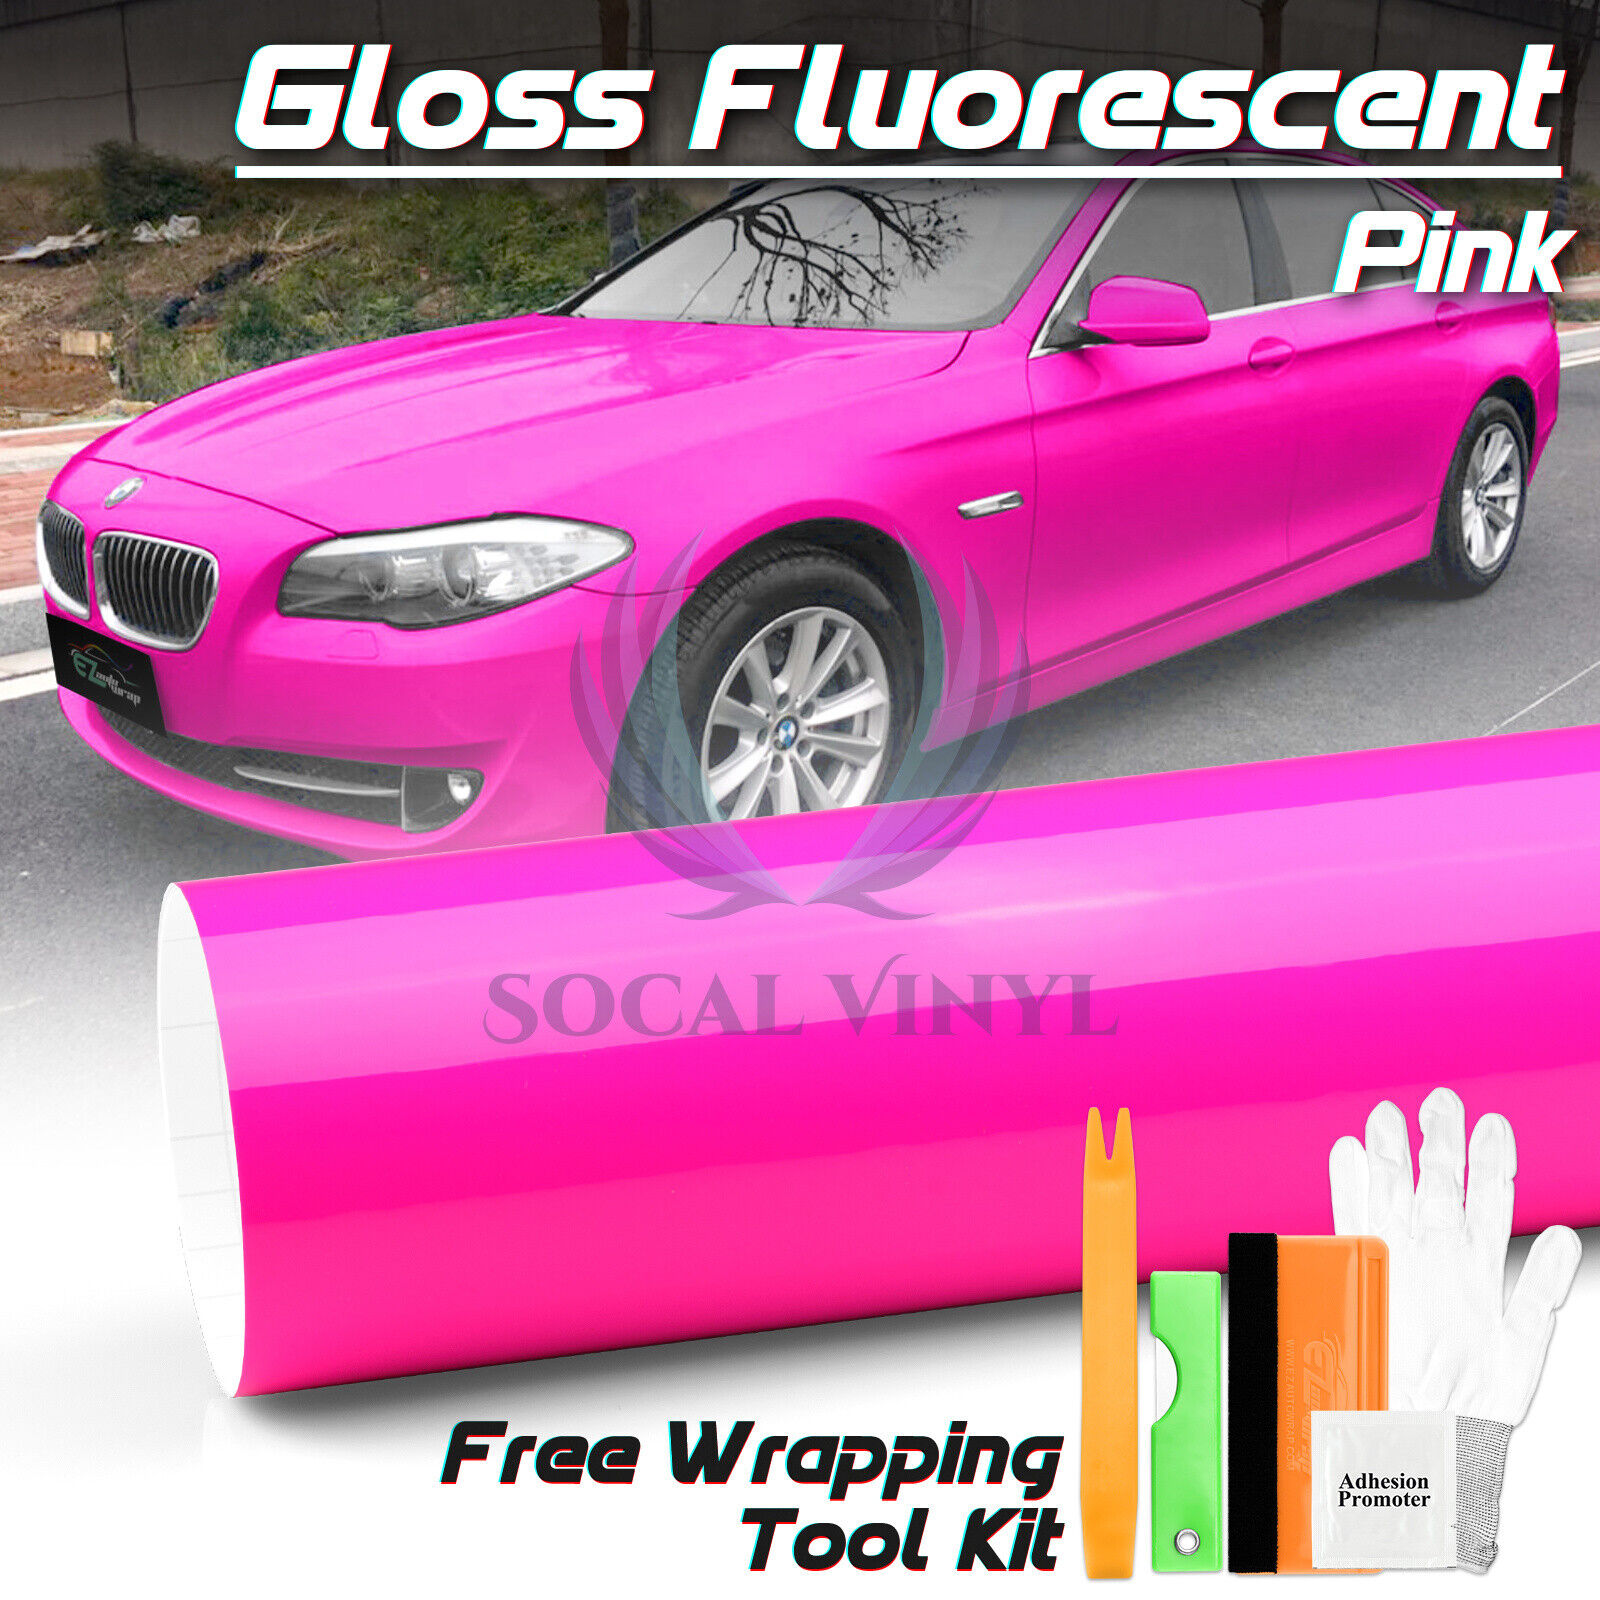 Fluorescent Gloss Neon Pink Car Sticker Decal Vinyl Wrap Air Release Sheet Film